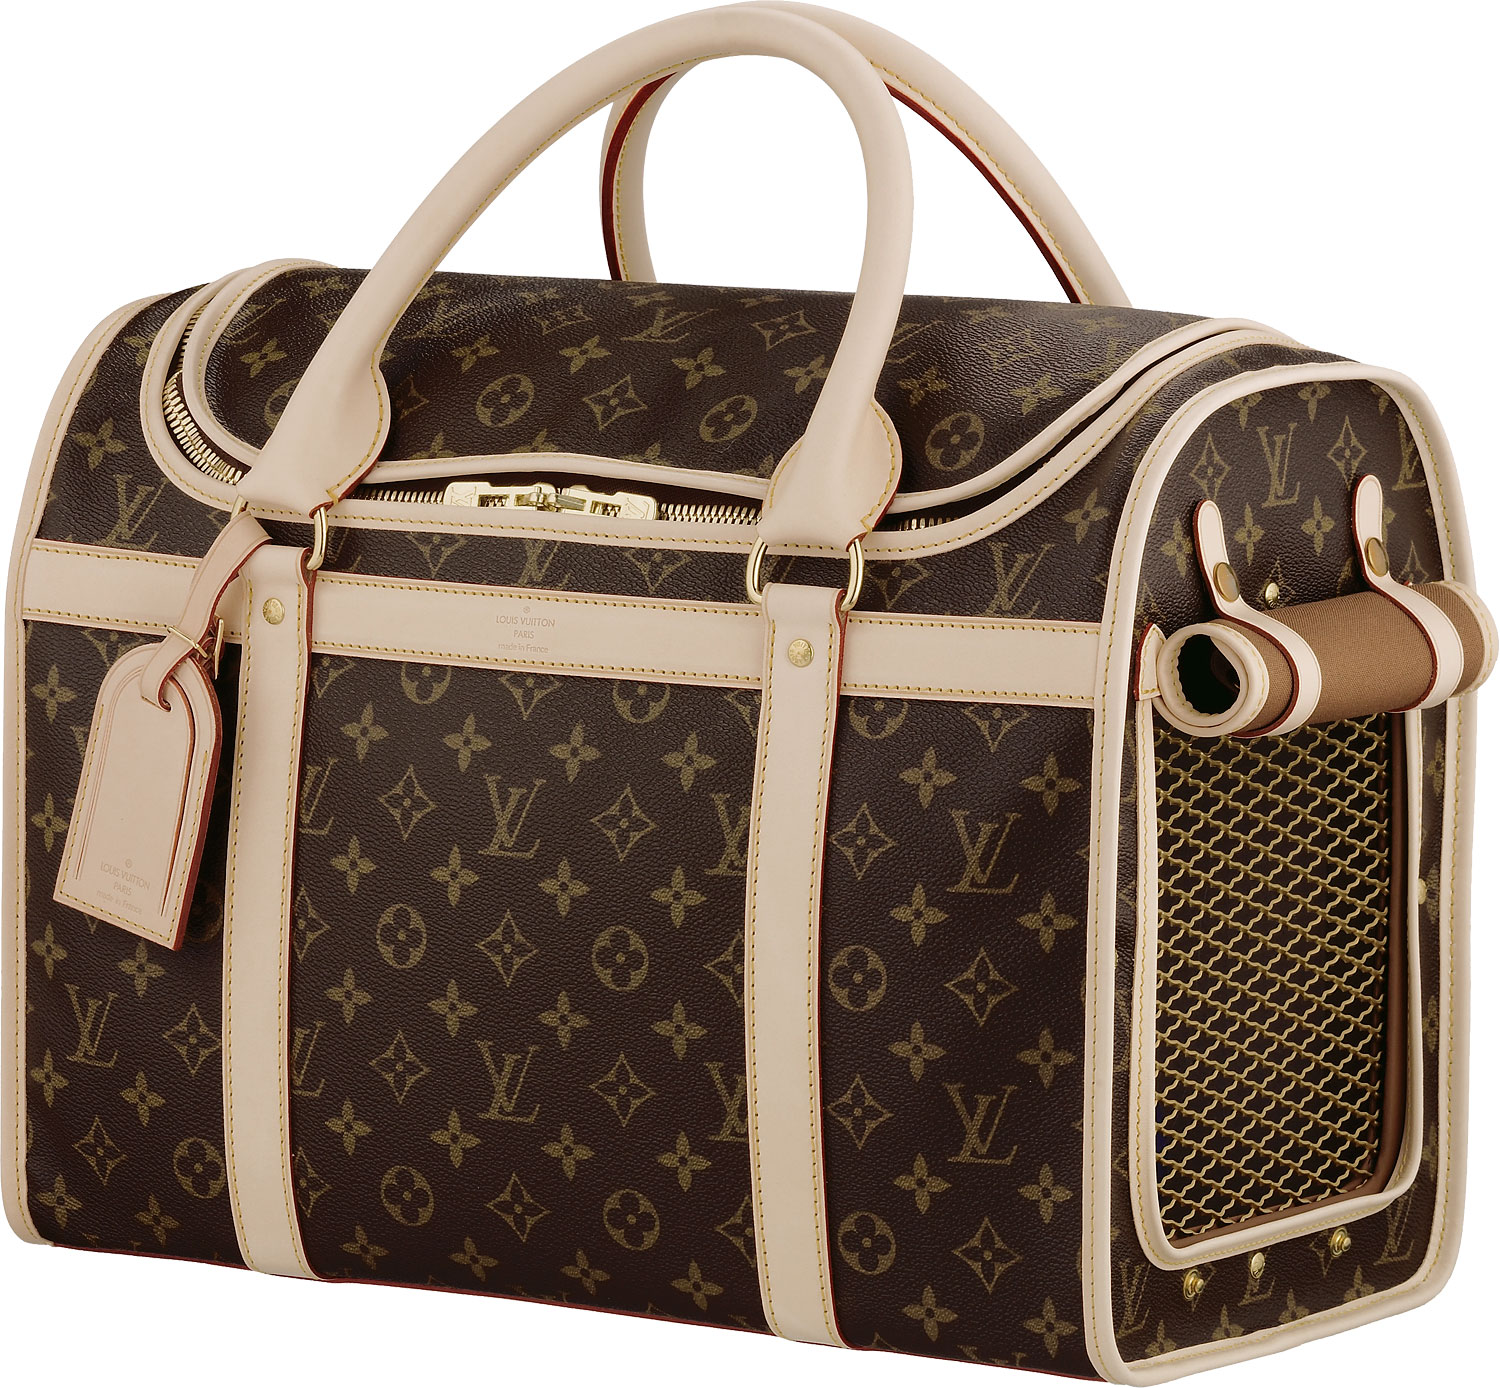 Bag Gloves Images: Louis Vuitton Bag Authentic